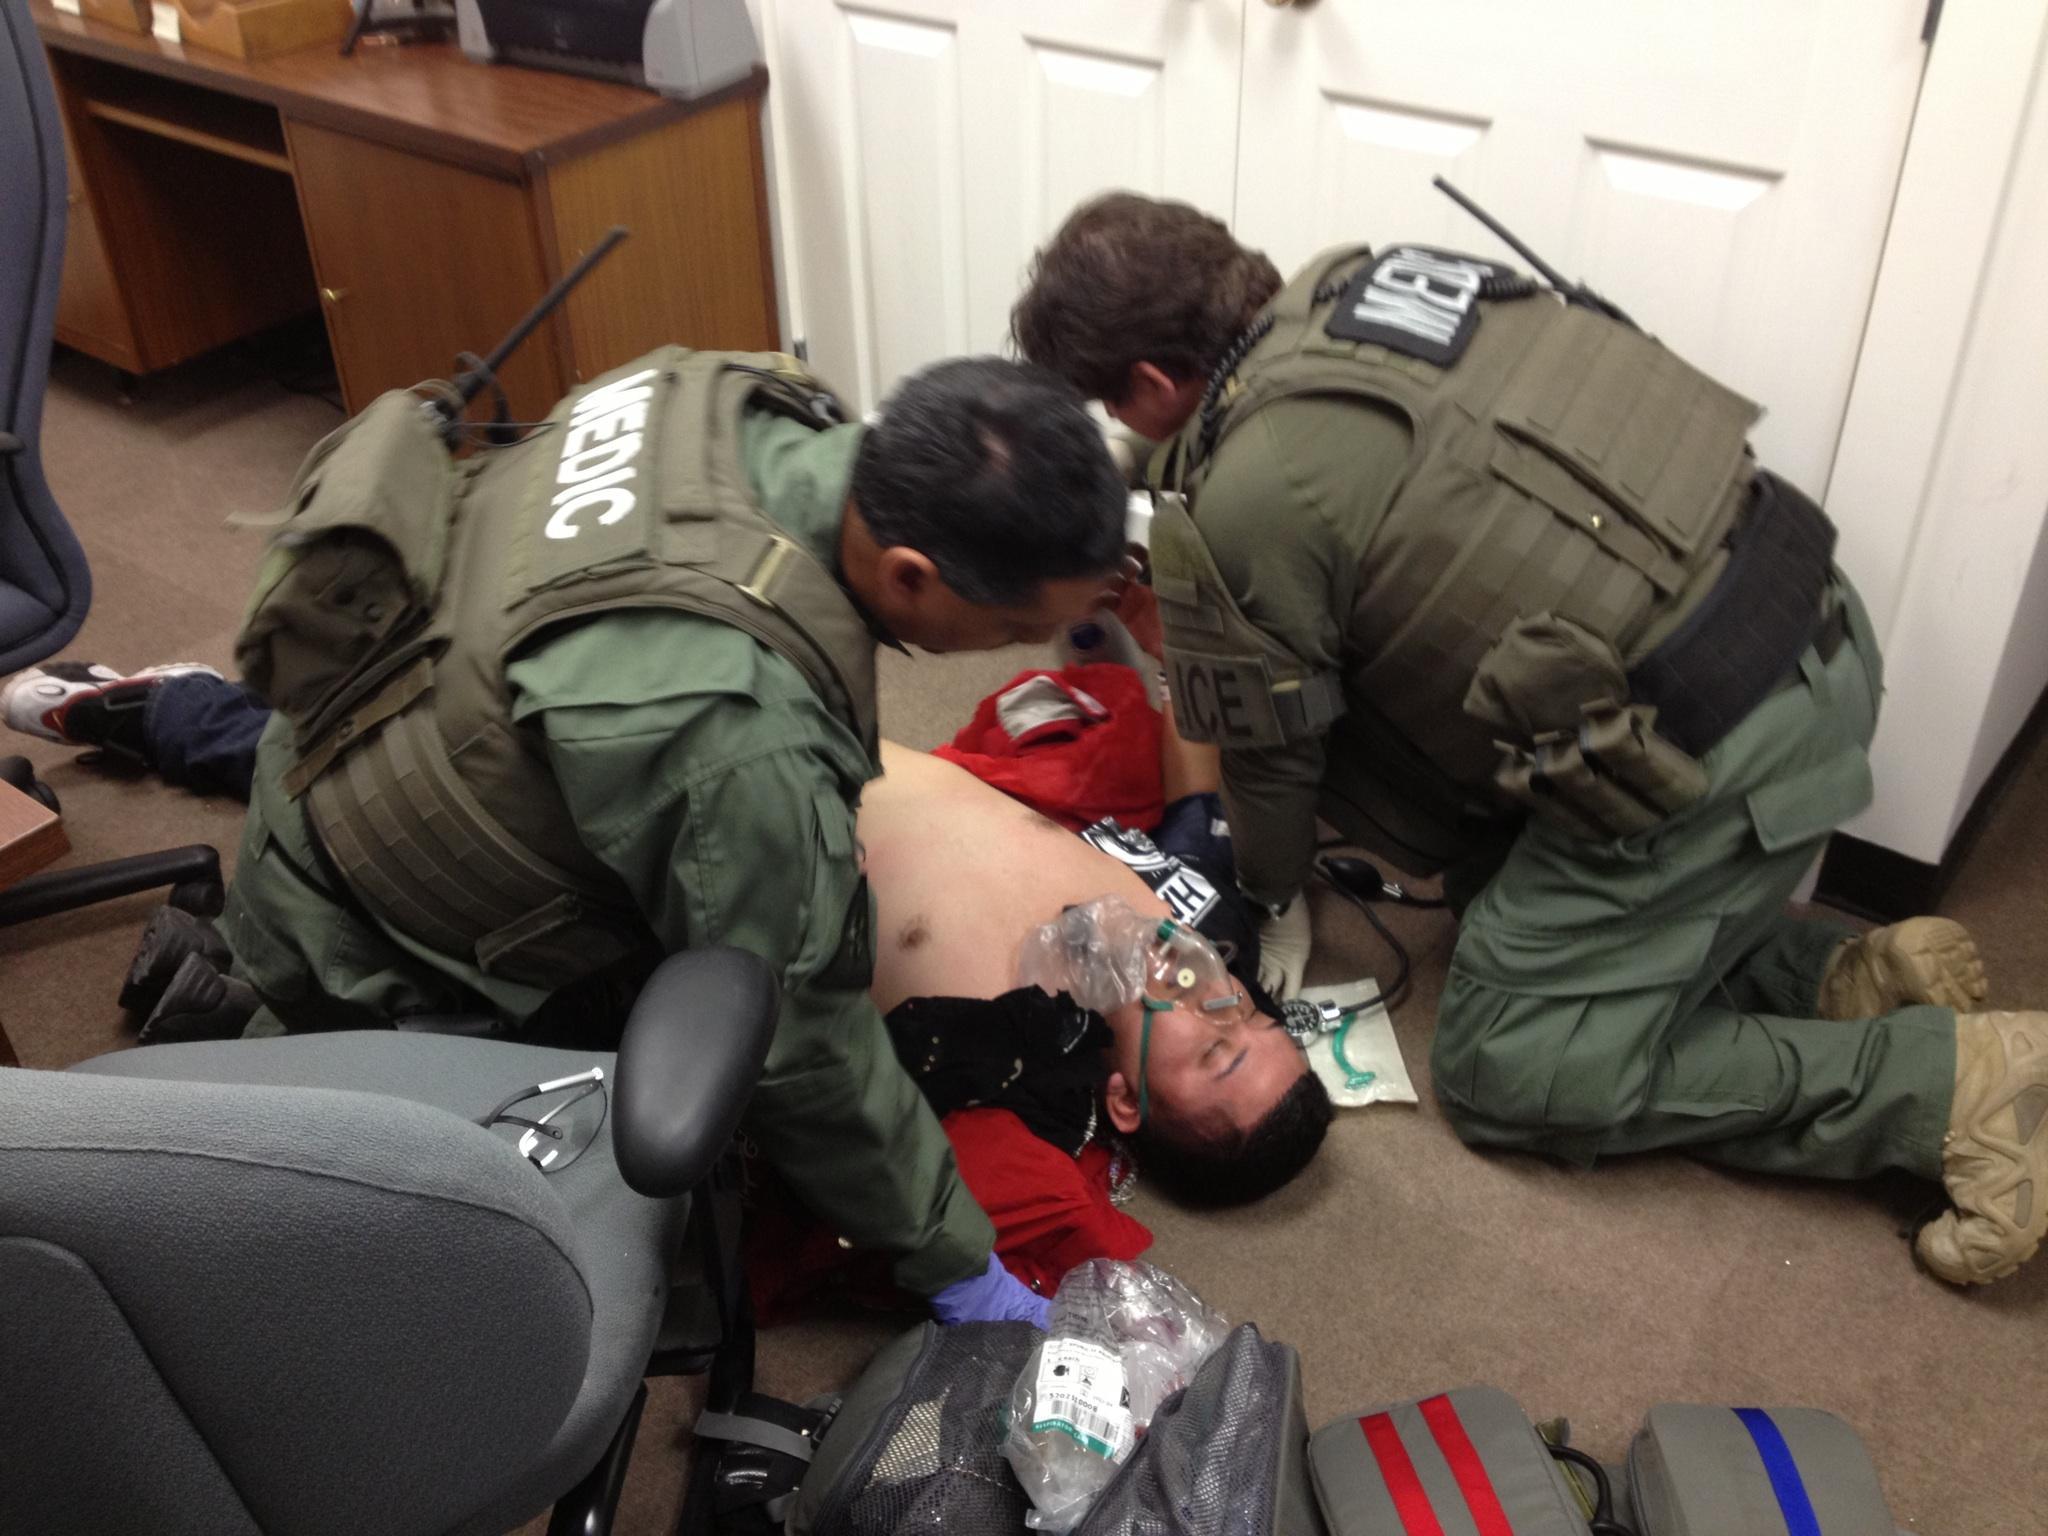 Los médicos del Equipo de Respuesta Especial tratan a un sospechoso herido durante una operación de arresto.